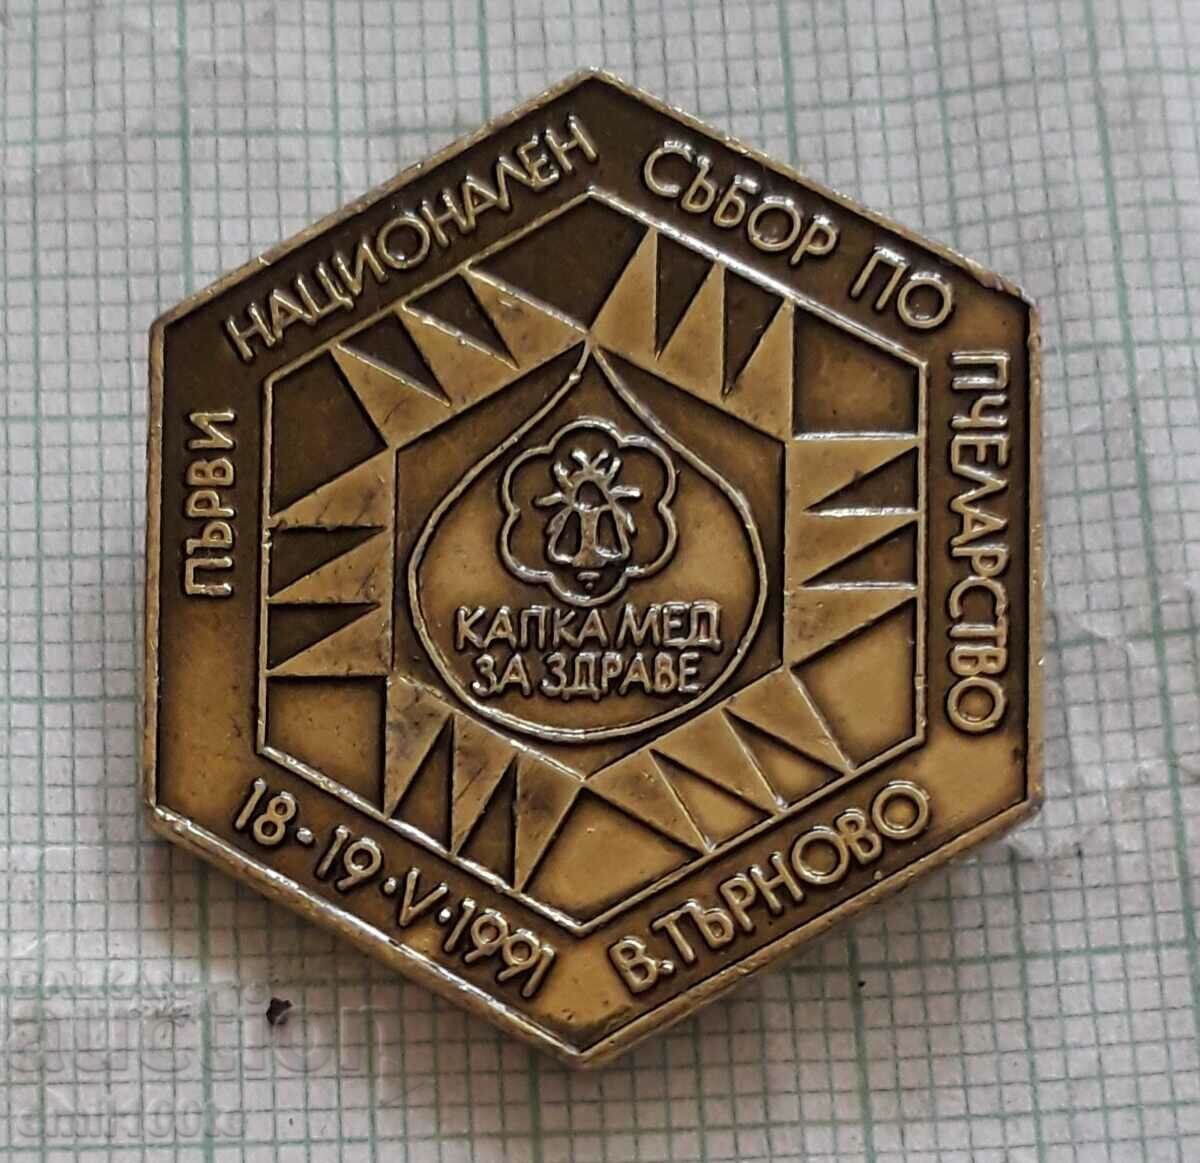 Σήμα - Εθνική Μελισσοκομική Συνέλευση Veliko Tarnovo 1991